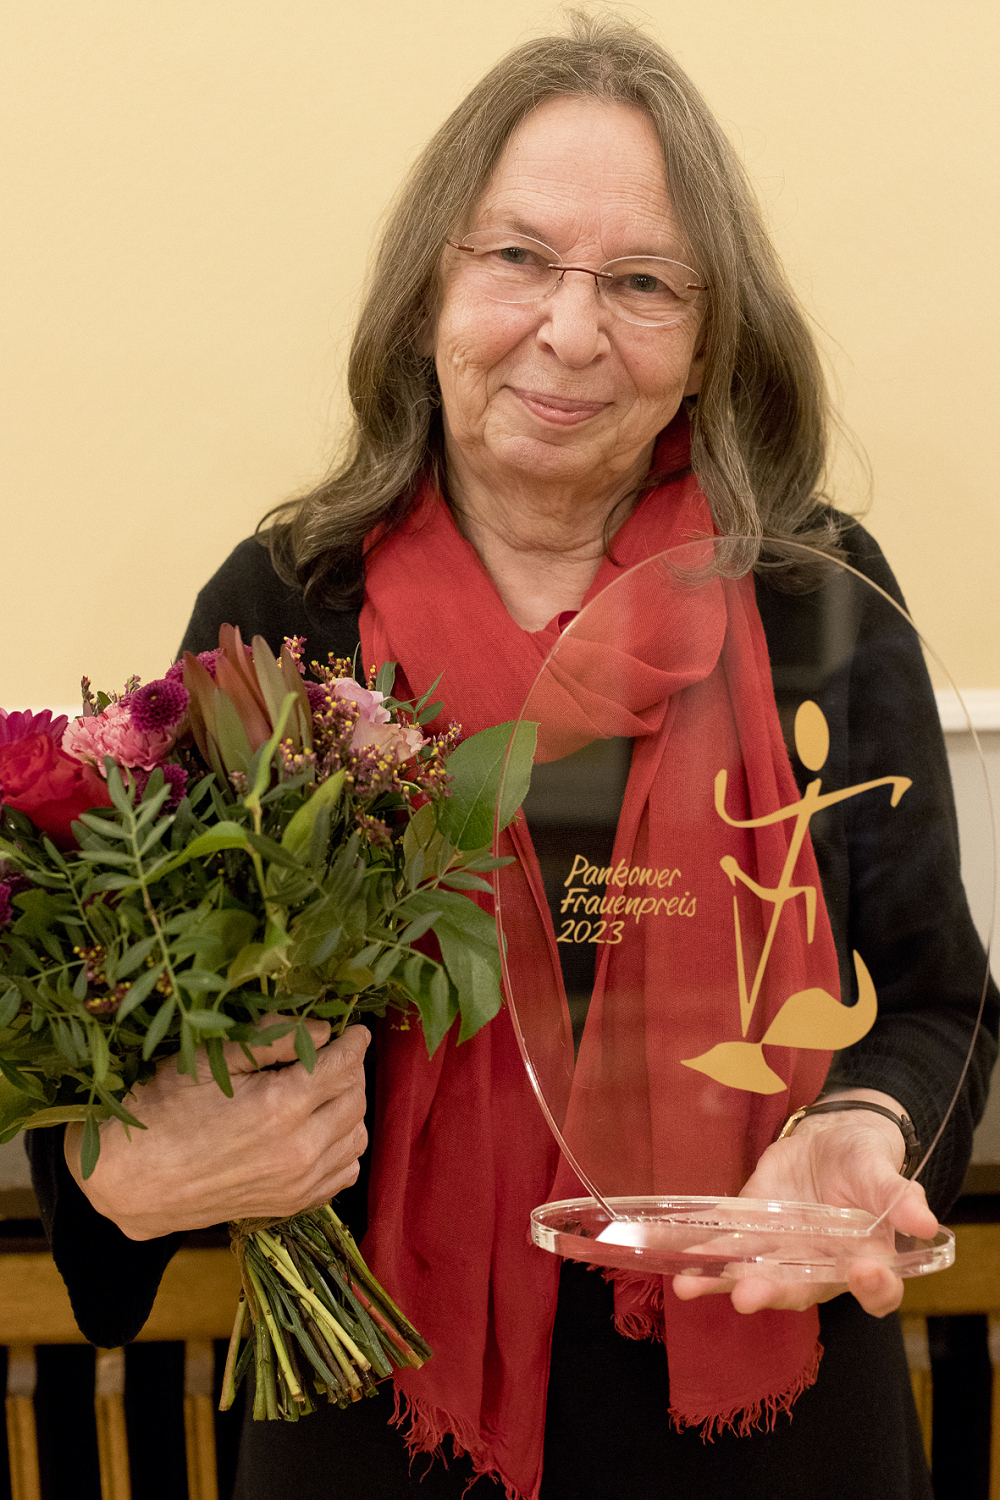 Preisträgerin Tina Pfaff erhielt neben dem Preisgeld auch eine Frauenpreis-Stele und Urkunde.